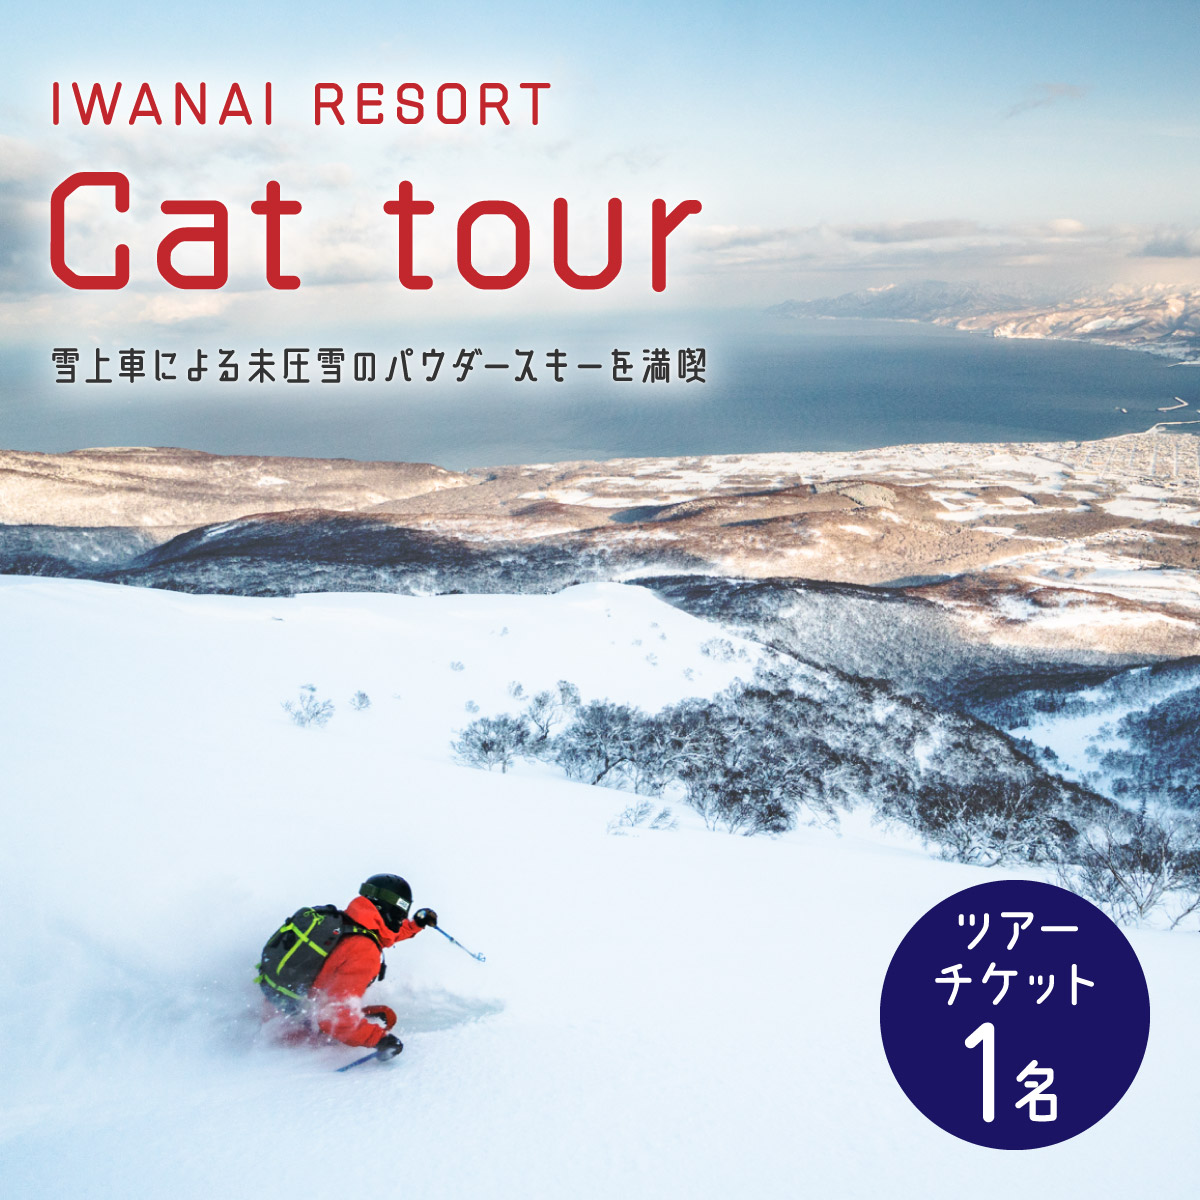 【先行予約】IWANAI RESORT【Cat tour】ticket 1名様